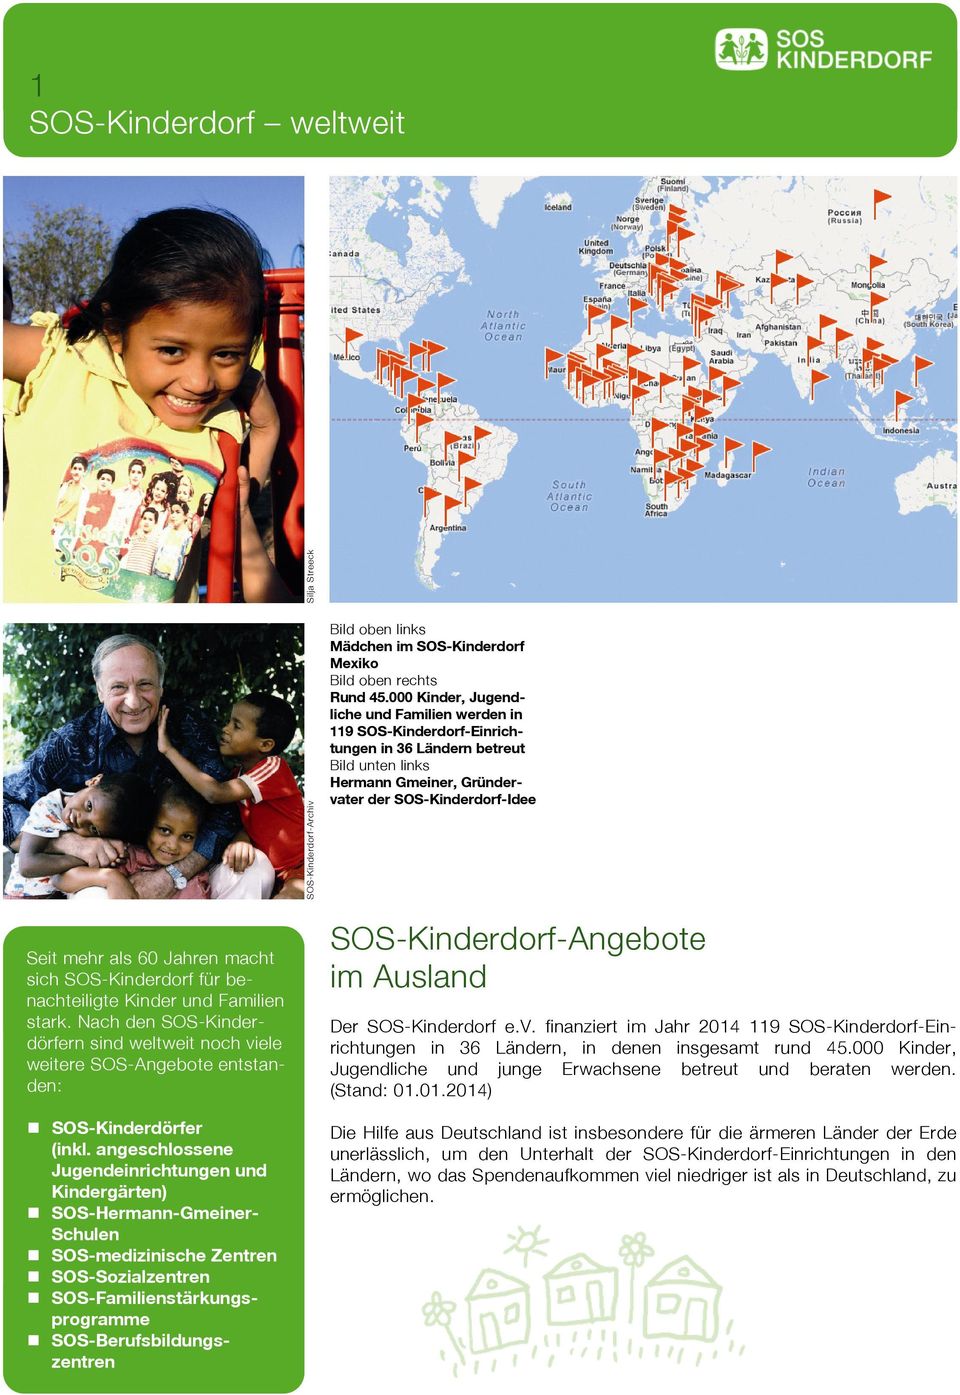 macht sich SOS-Kinderdorf für benachteiligte Kinder und Familien stark. Nach den SOS-Kinderdörfern sind weltweit noch viele weitere SOS-Angebote entstanden: SOS-Kinderdörfer (inkl.